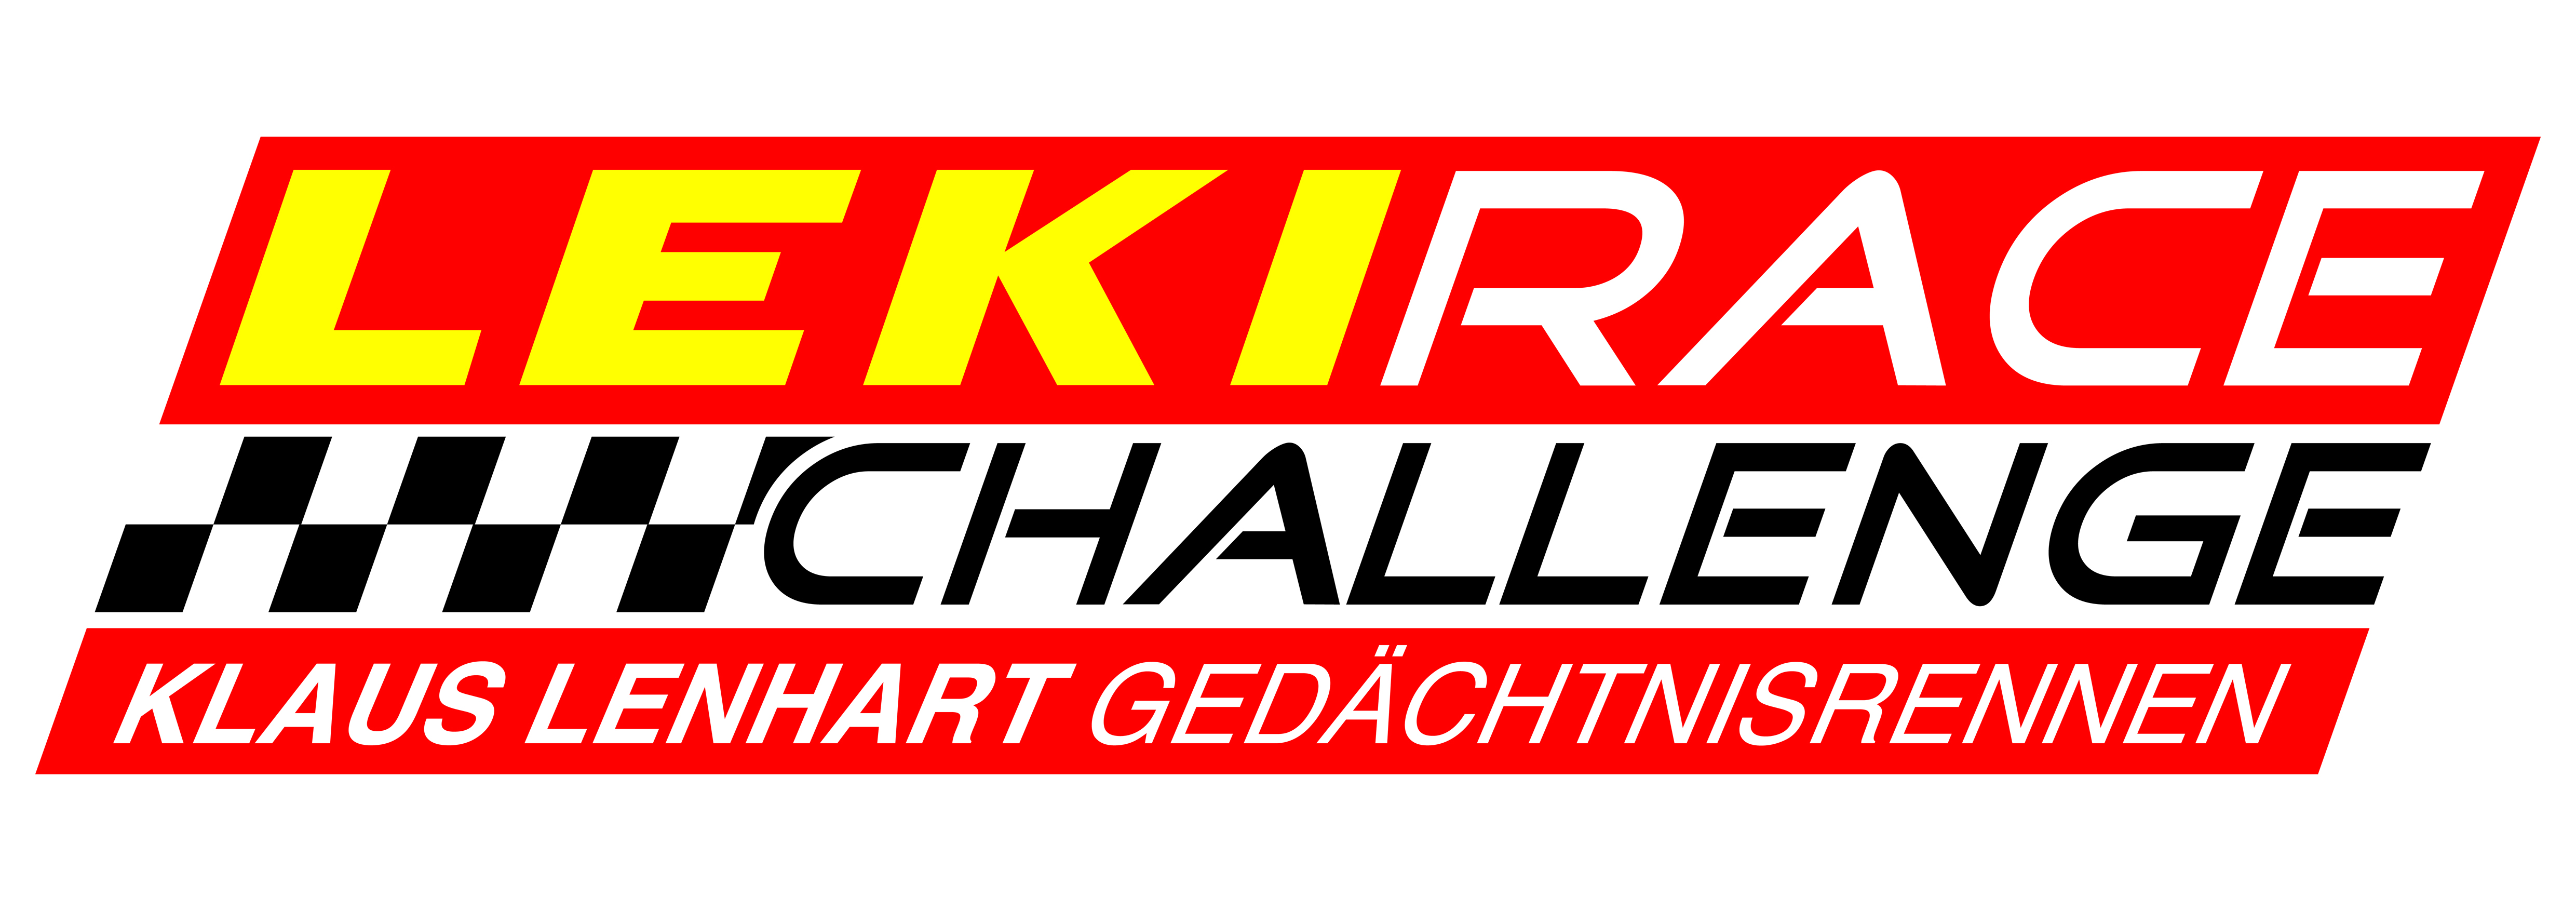 Logo LEKI Race Challenge